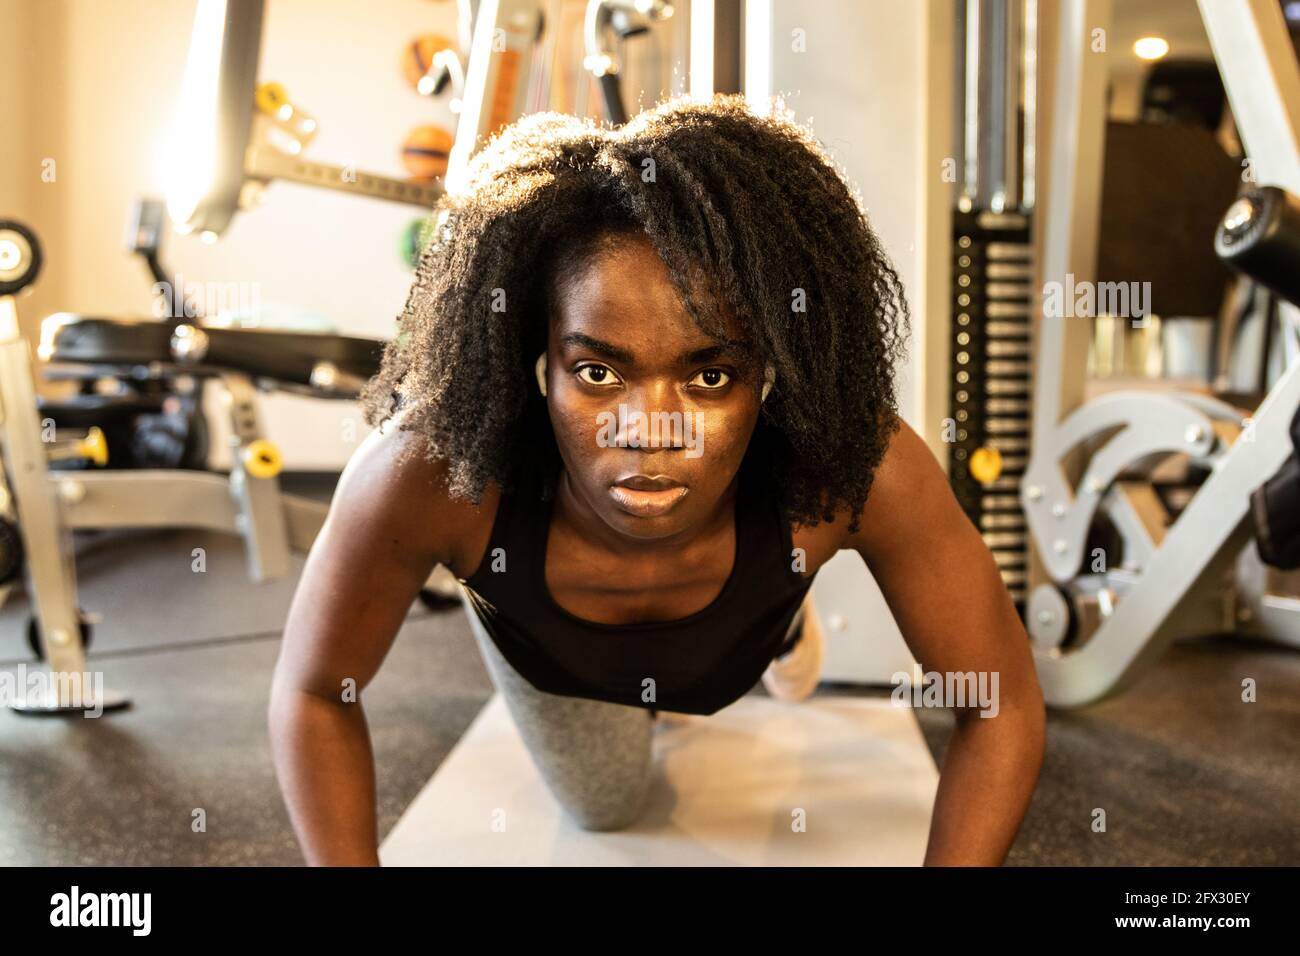 Schwarze Frau trainieren in der Halle im Fitness-Studio tun Push-up, eine Person, Nahaufnahme Porträt, natürliche Haare, Blick auf die Kamera, afroamerikanisch, Bodybuildin Stockfoto